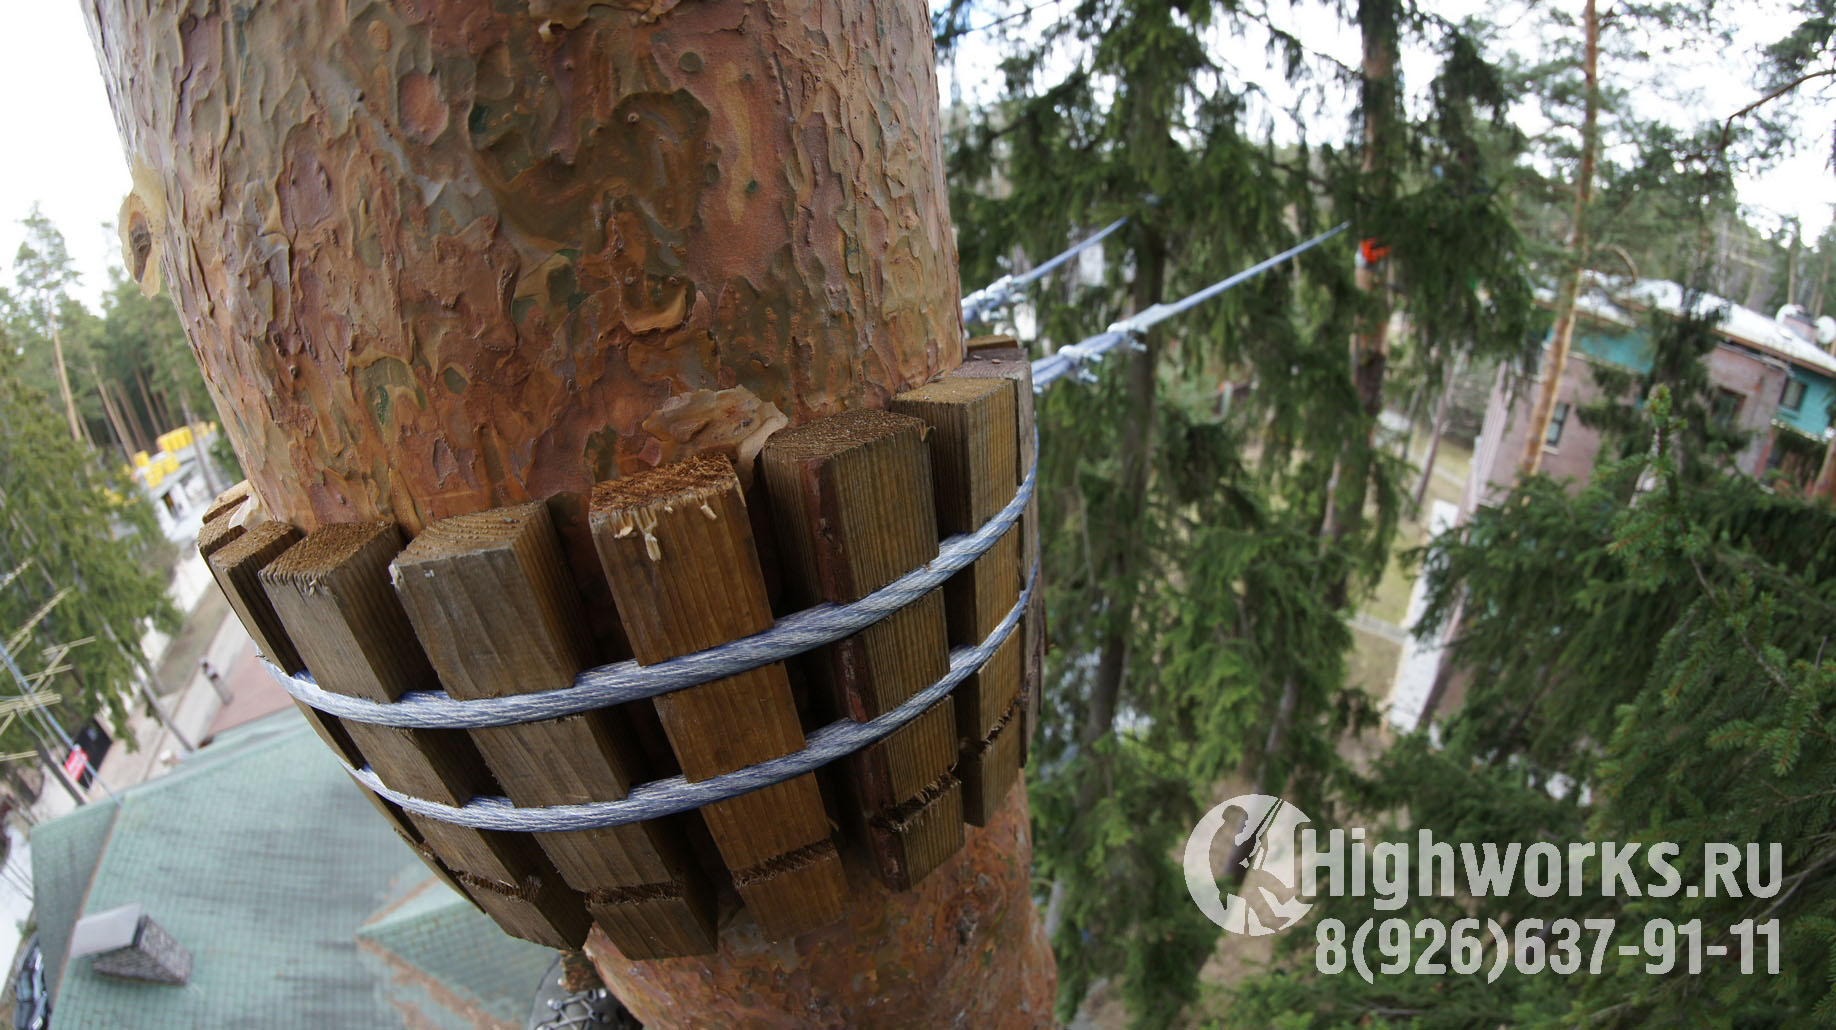 Укрепление и демонтаж деревьев промышленными альпинистами